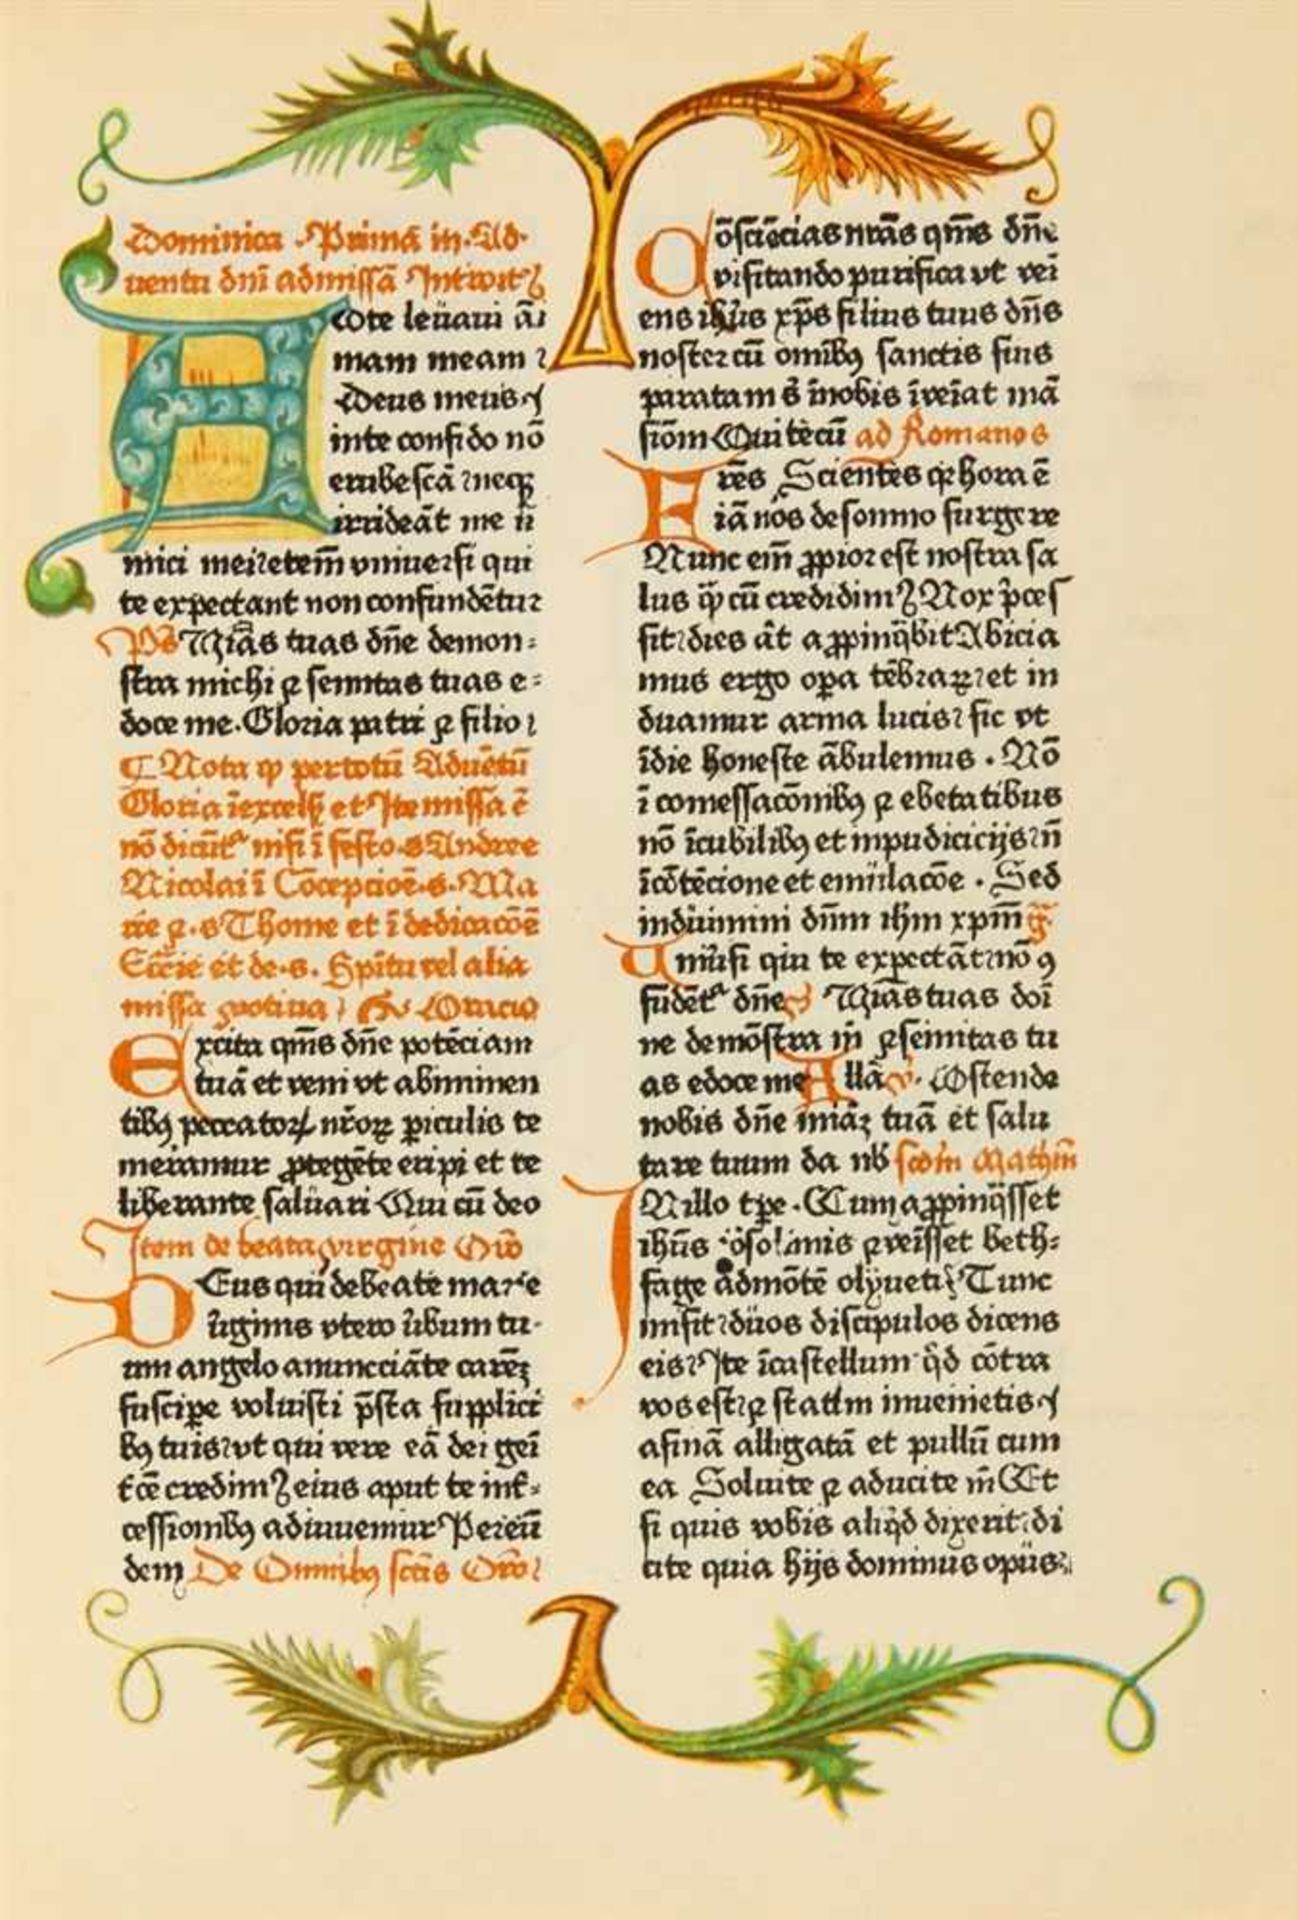 Missale Pragense z roku 1479 (Missale Pragense of 1479). - Faksimile und Kommentarheft von Zdenēk